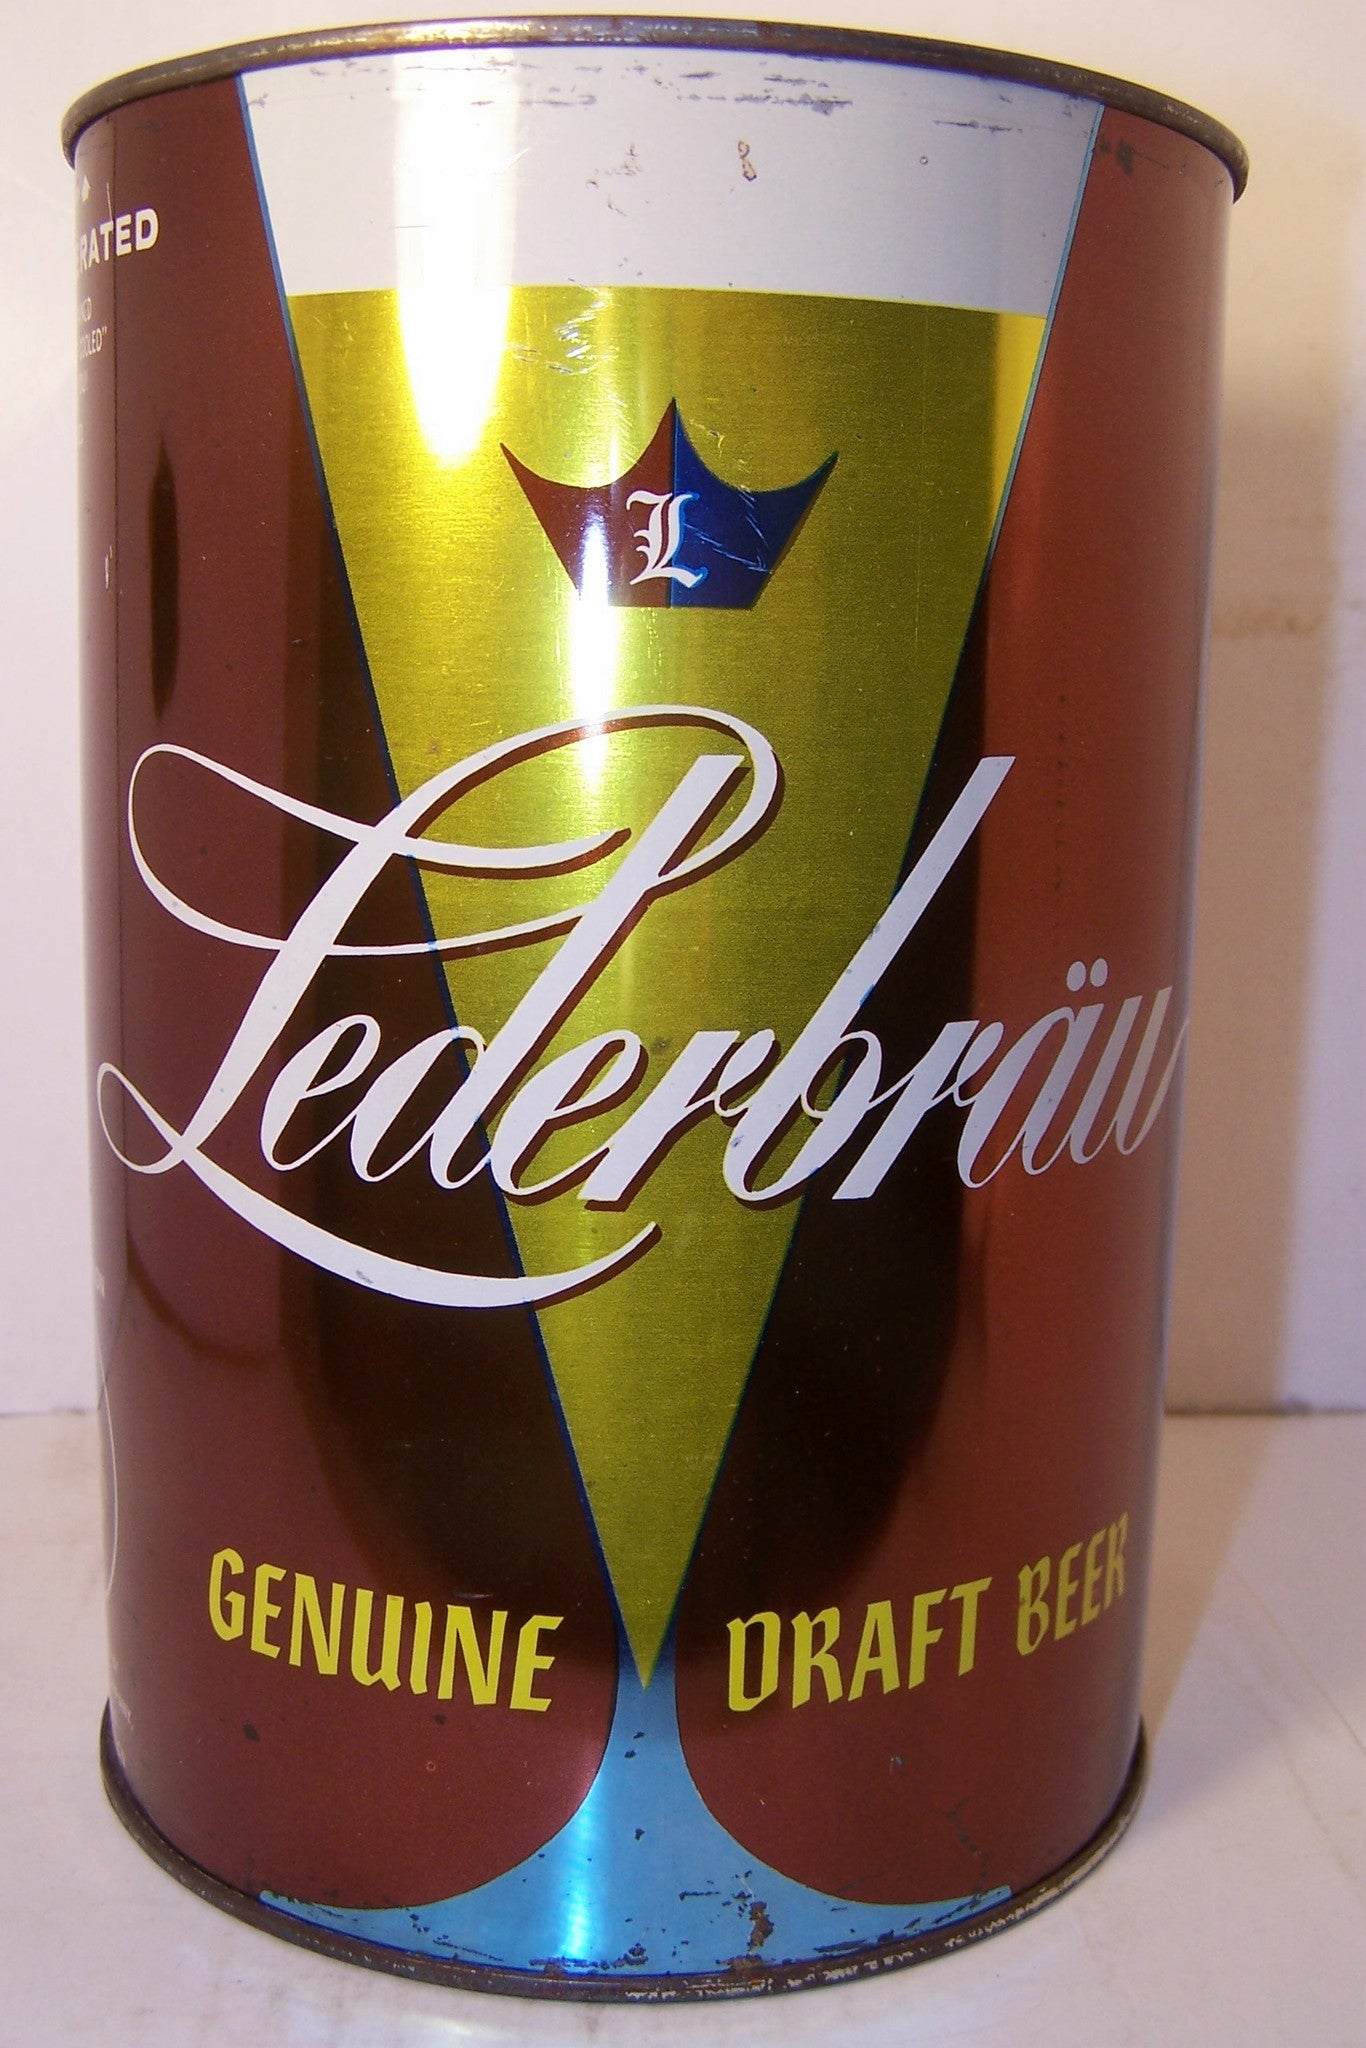 Lederbrau Genuine Draft Beer, USBC 245-11, Grade 1/1-  Sold  12/2/14